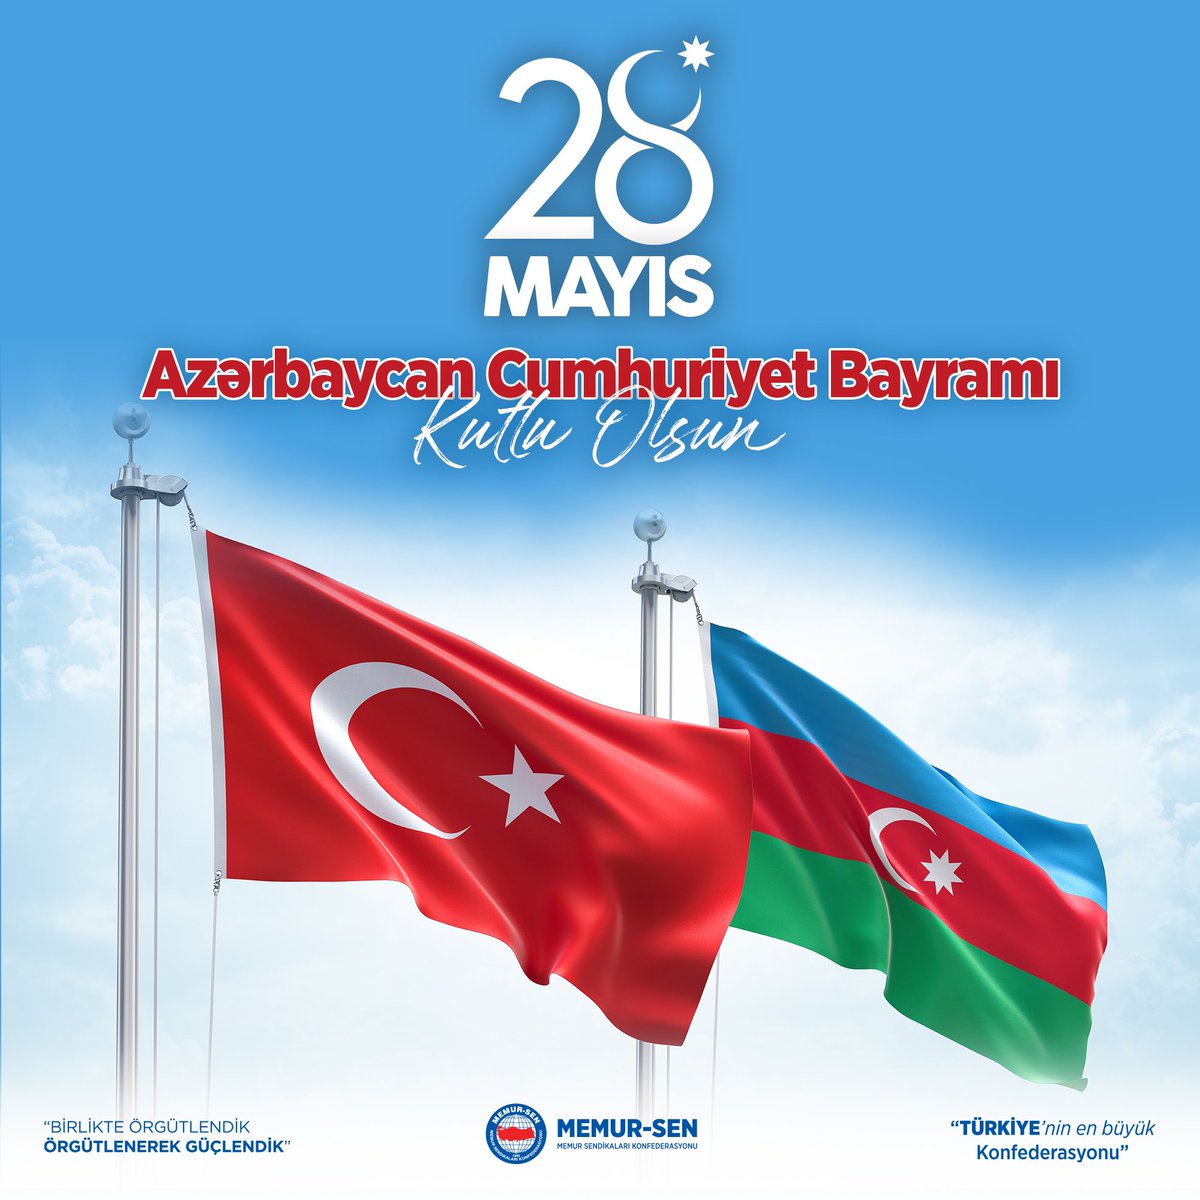 Dost ve kardeş ülke Azerbaycan'ın 28 Mayıs Cumhuriyet Günü kutlu olsun🇹🇷 Dost və qardaş ölkə Azərbaycan'ın Respublika Günü mübarək olsun🇦🇿 #ikidevletbirmillet